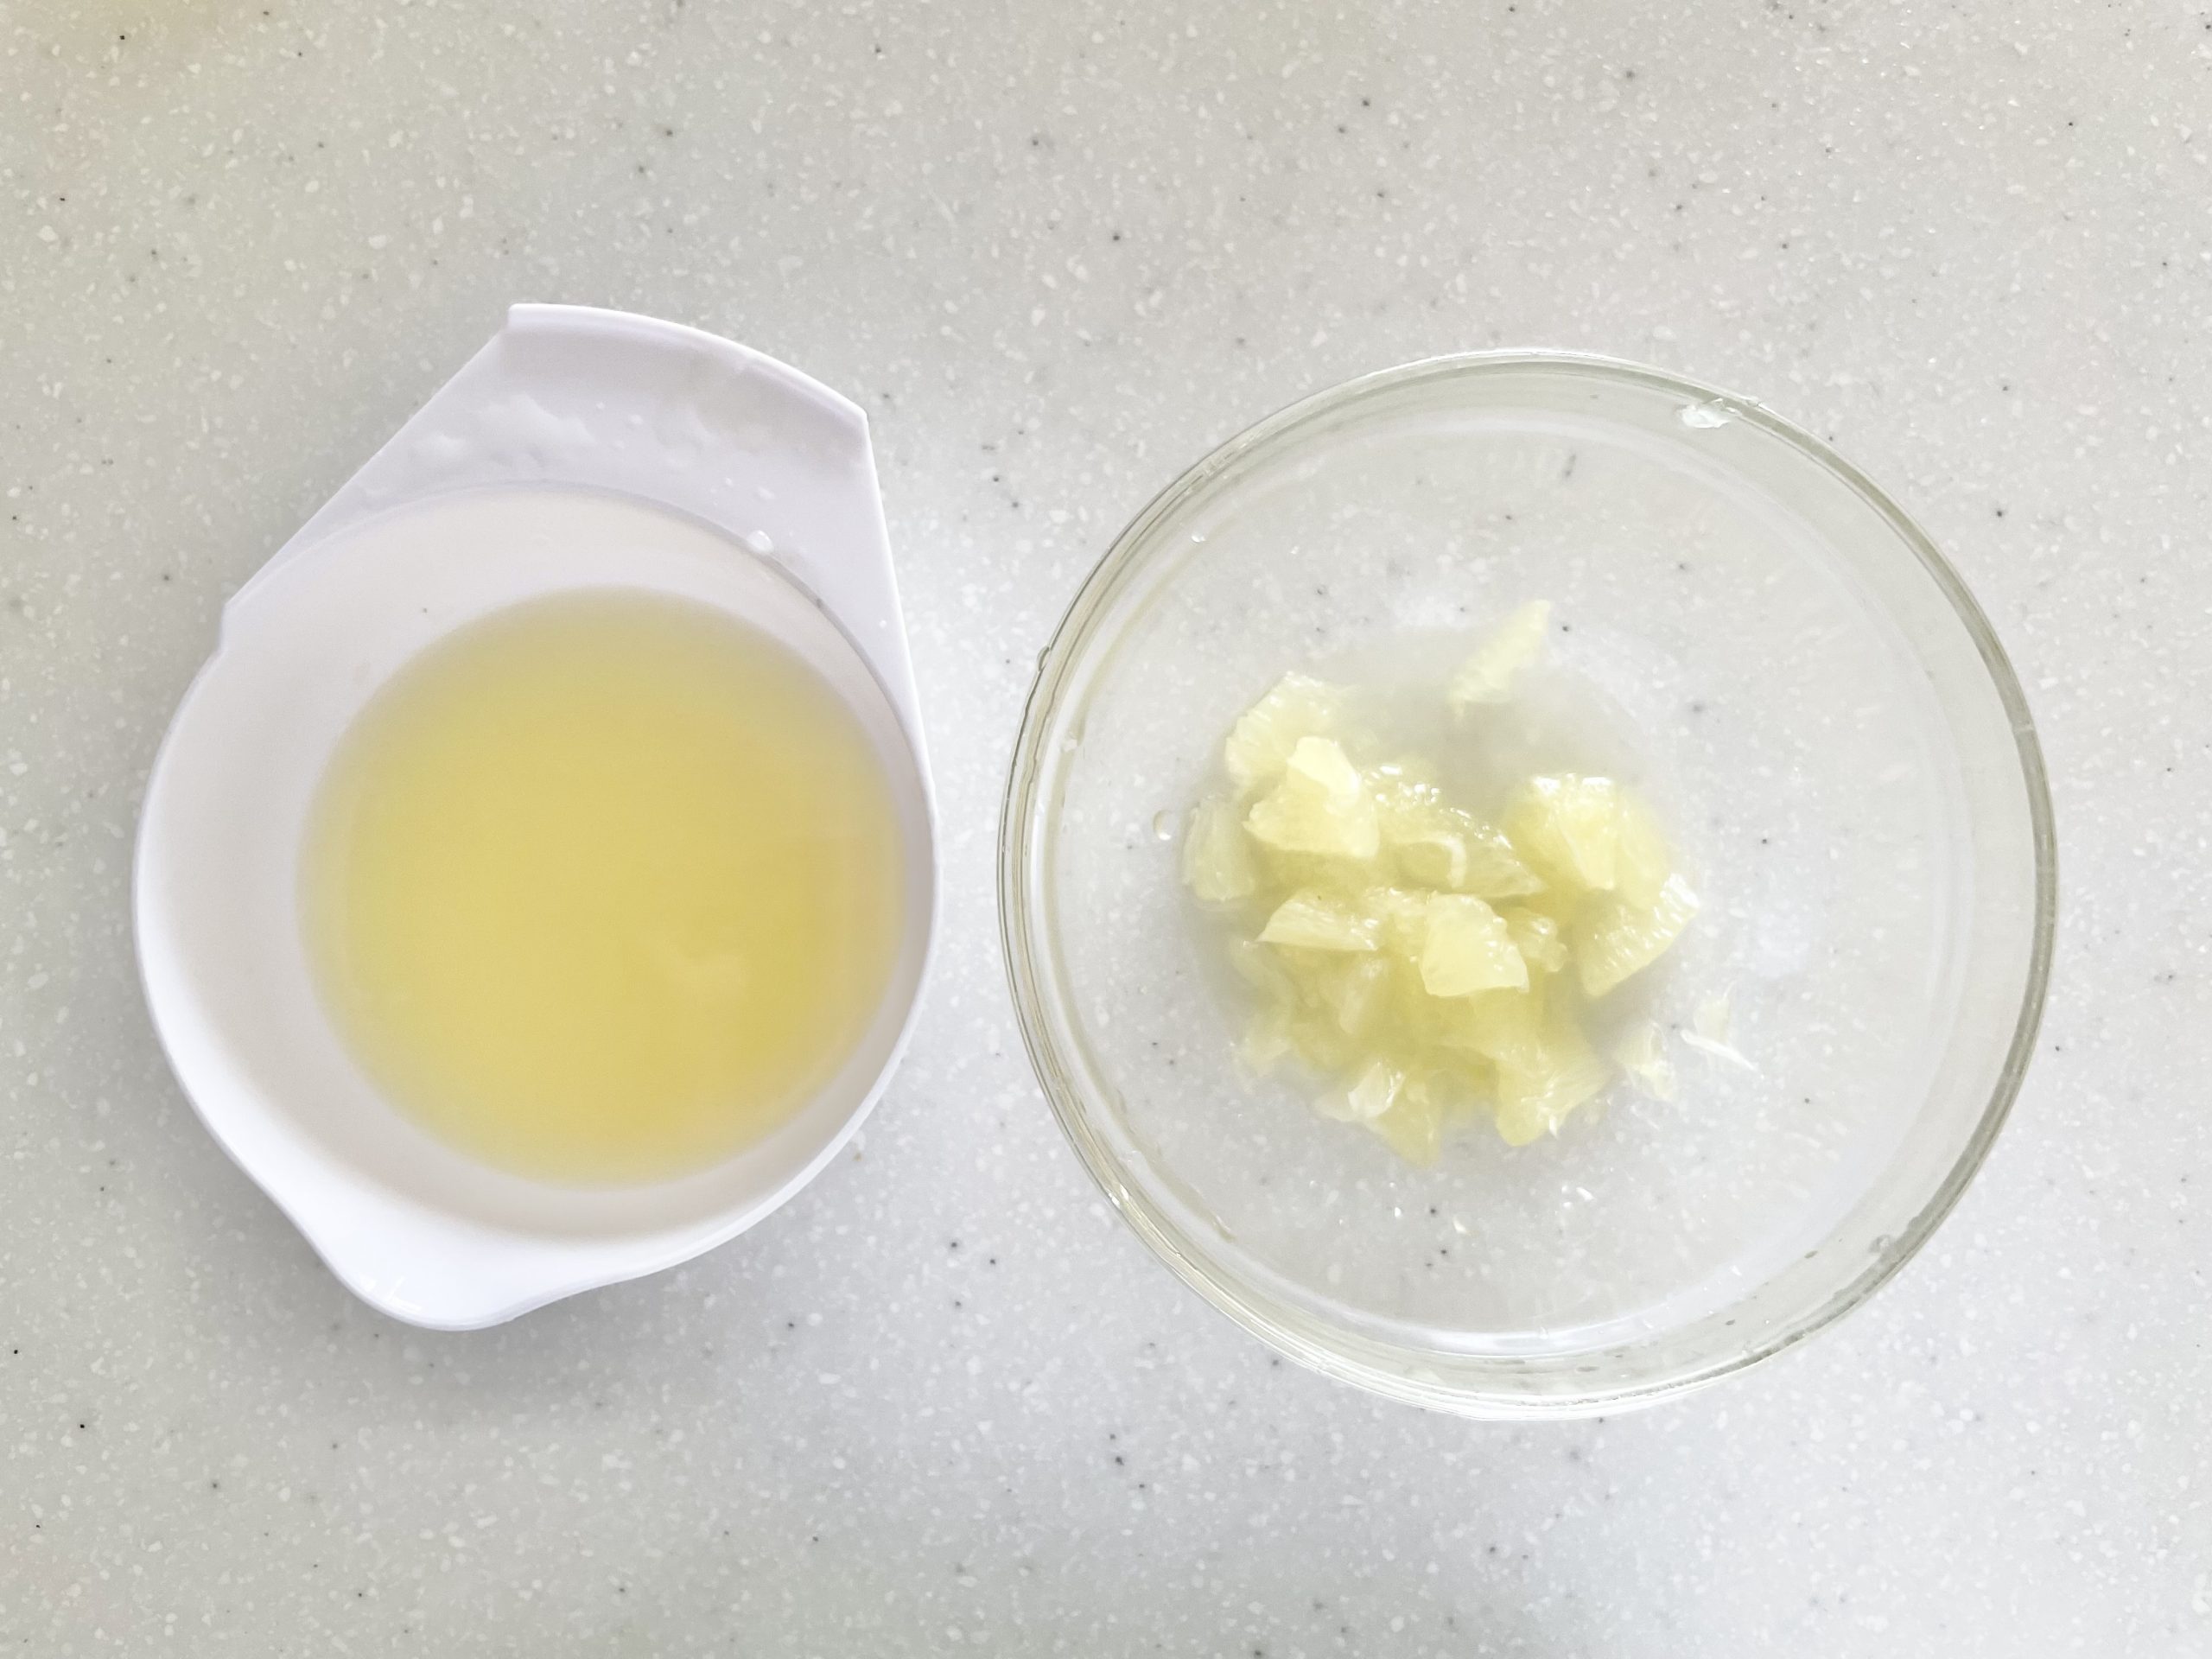 レモン1つ分は果汁を出すために絞り、もう1つは果肉用としてスプーンで果肉を取り出す。